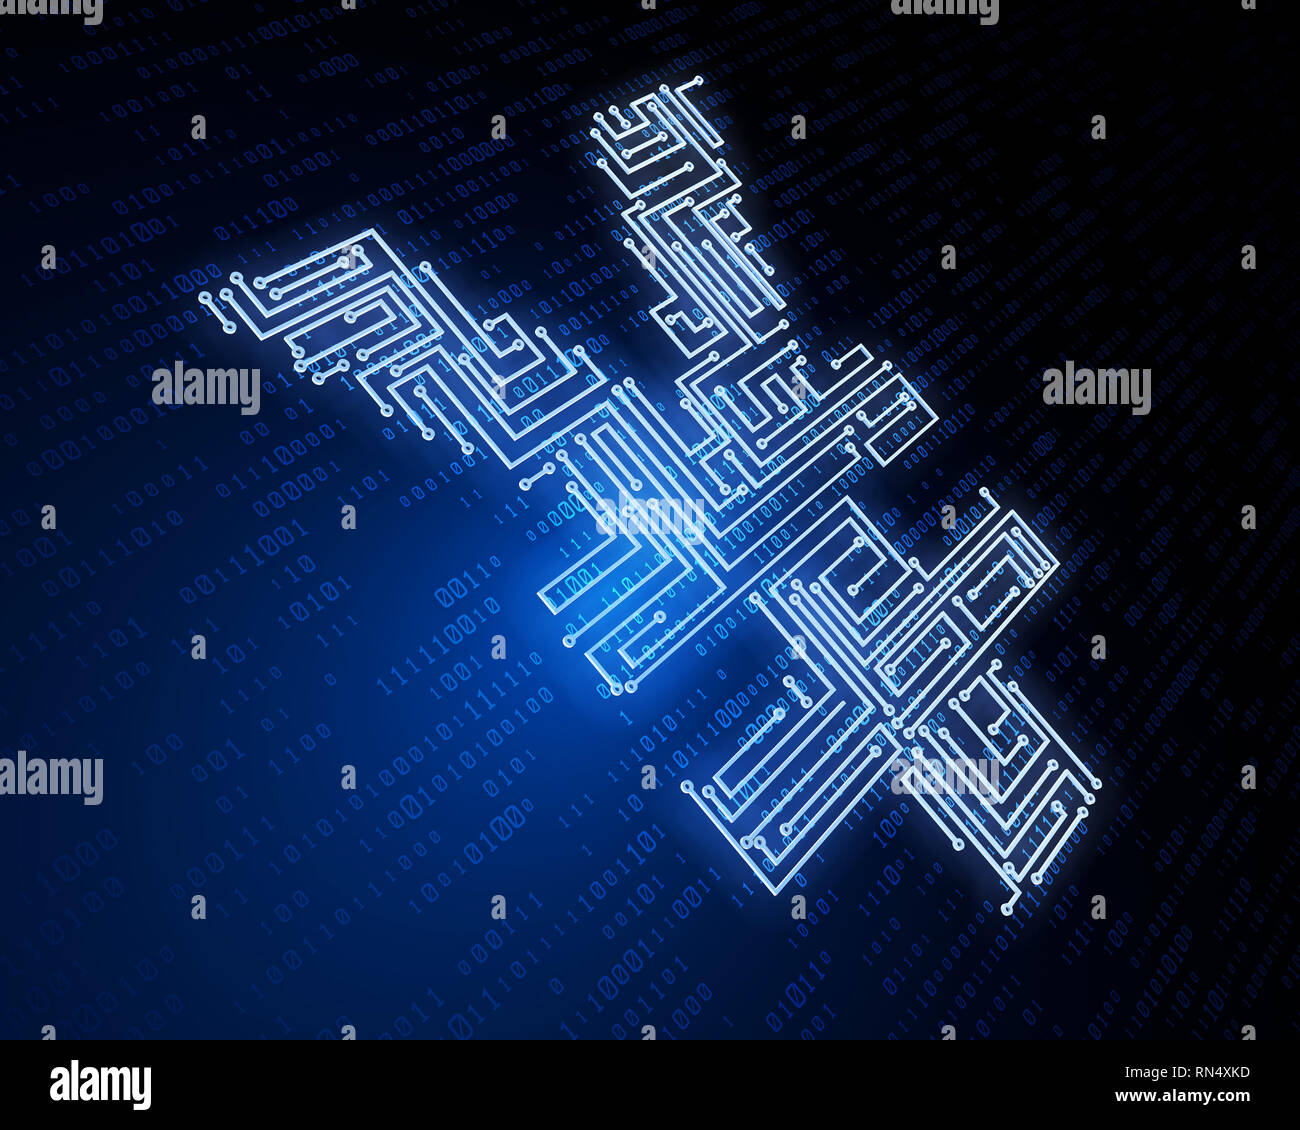 Technologie financière électronique, symbole RMB, transmission de données réseau Banque D'Images